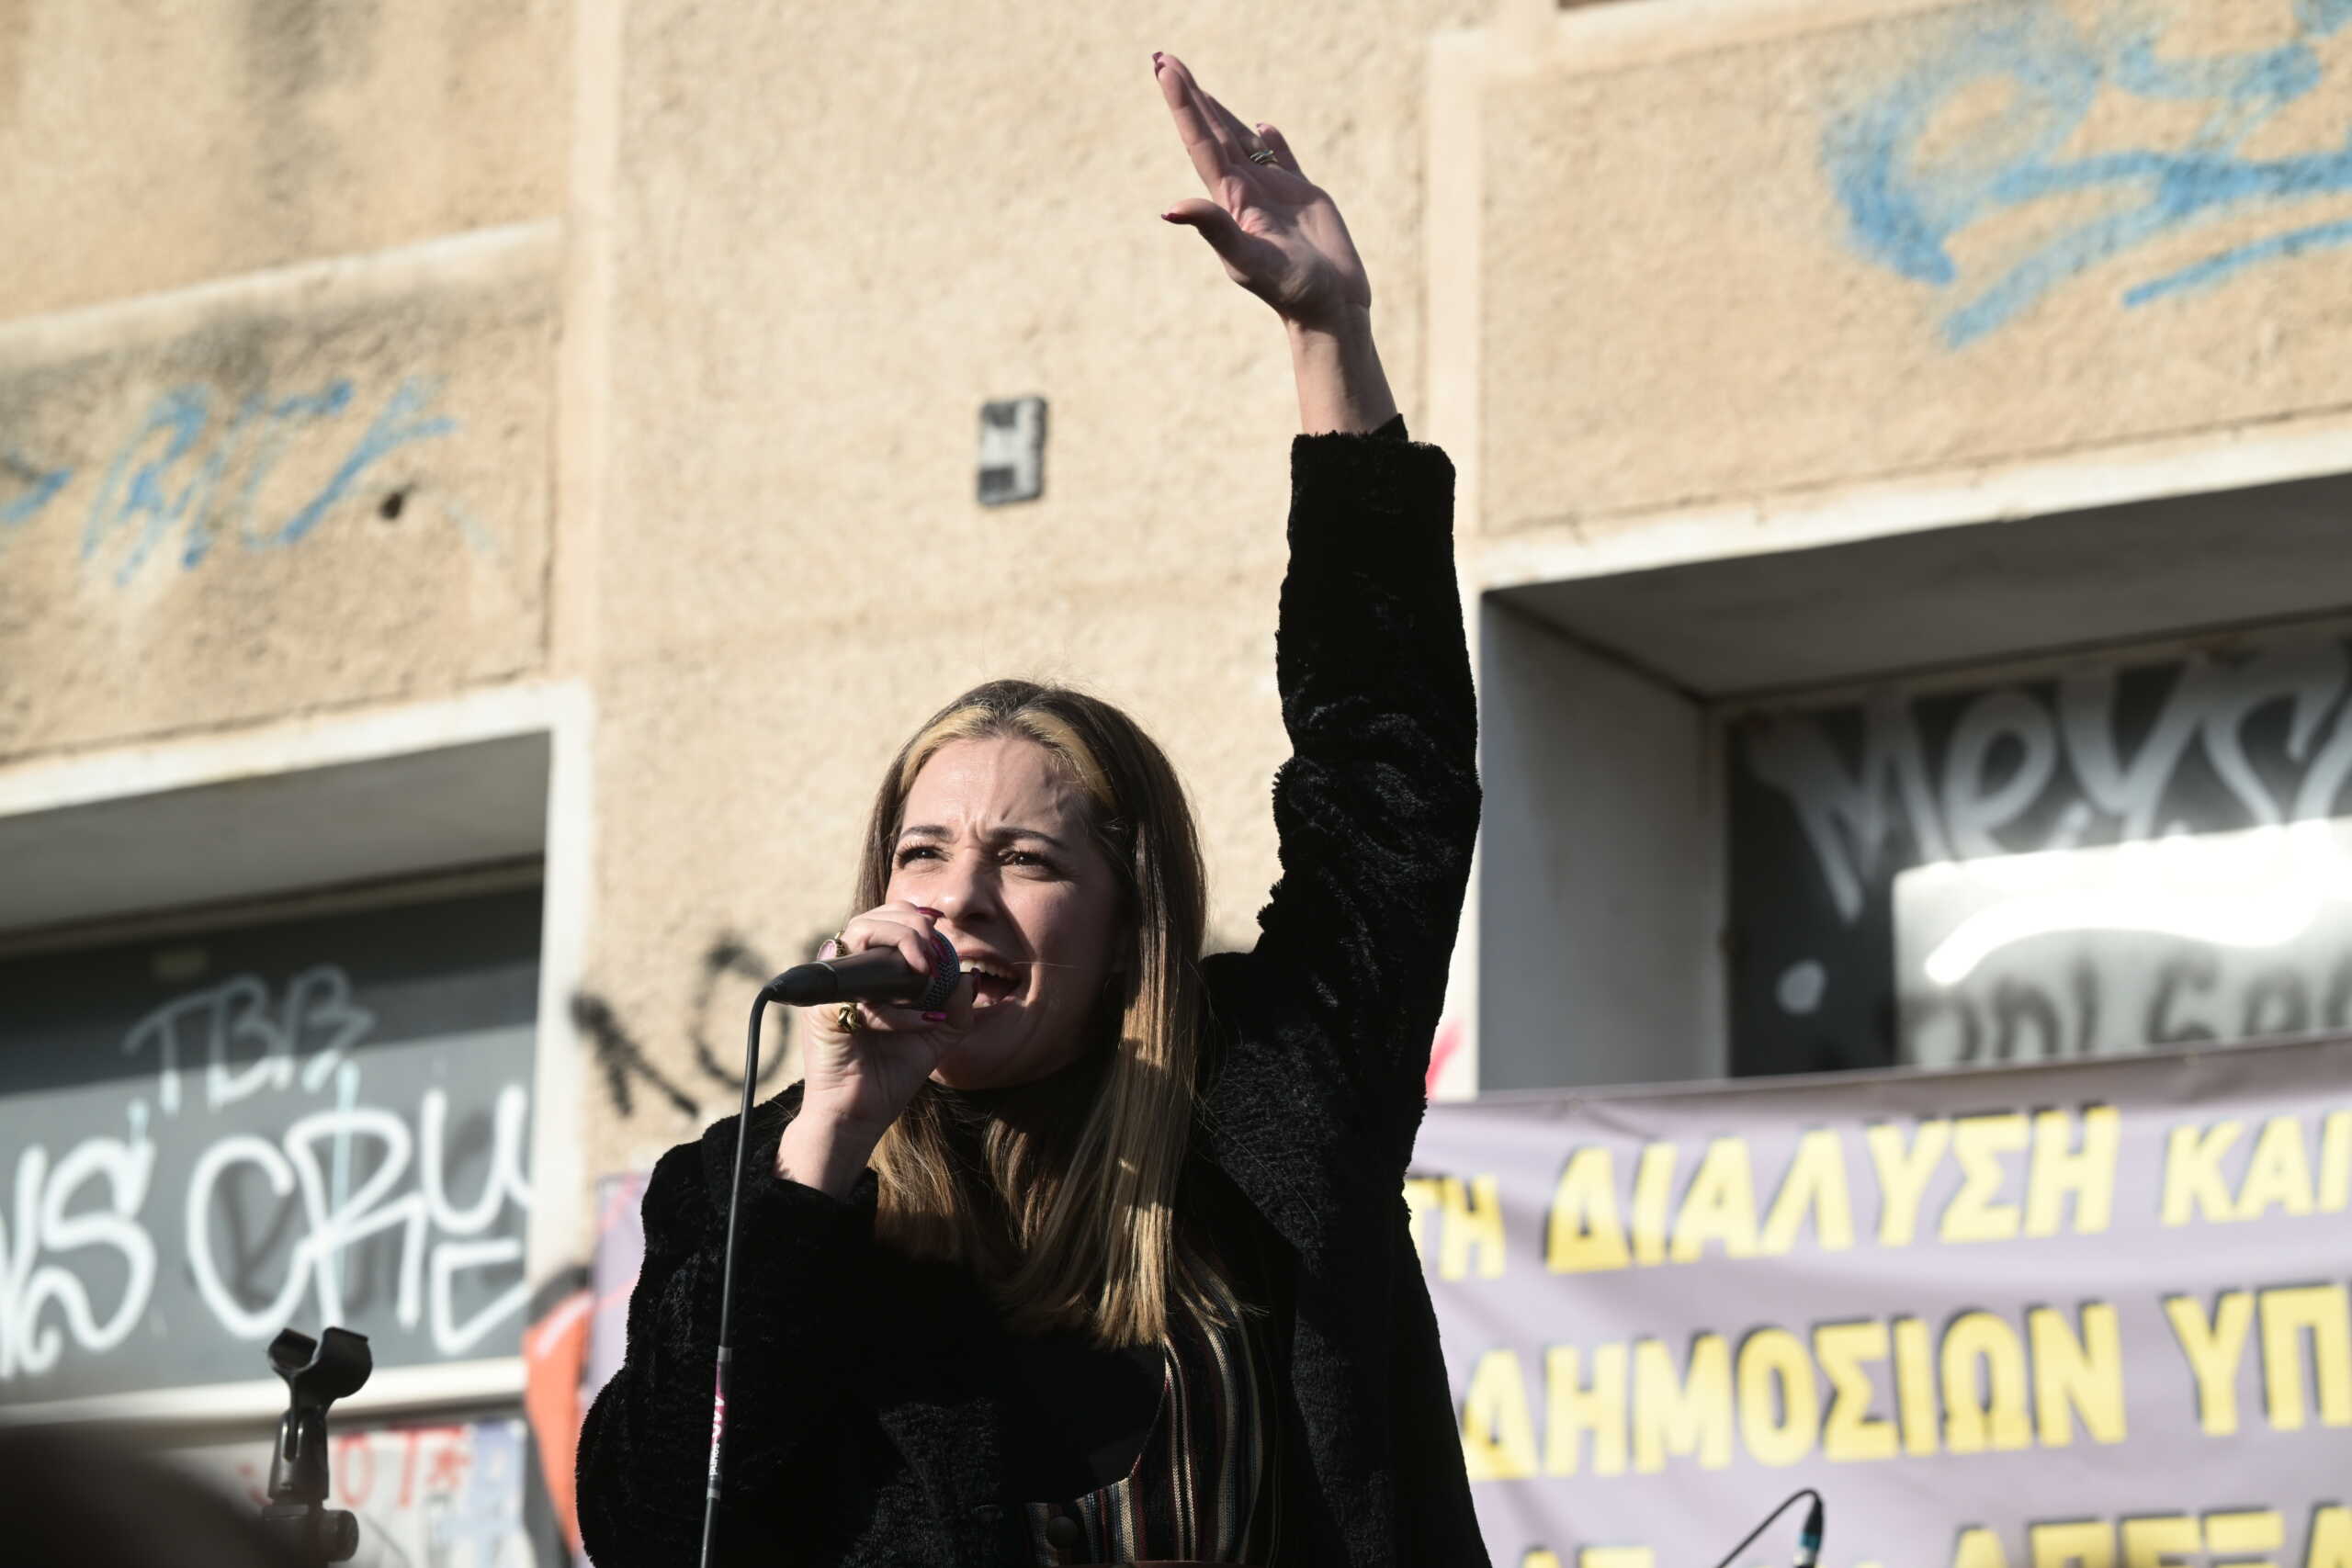 ΚΝΕ: Εκδήλωση με αφορμή την γυναικοκτονία στους Αγίους Αναργύρους – Η Νατάσσα Μποφίλιου ανάμεσα στους ομιλητές